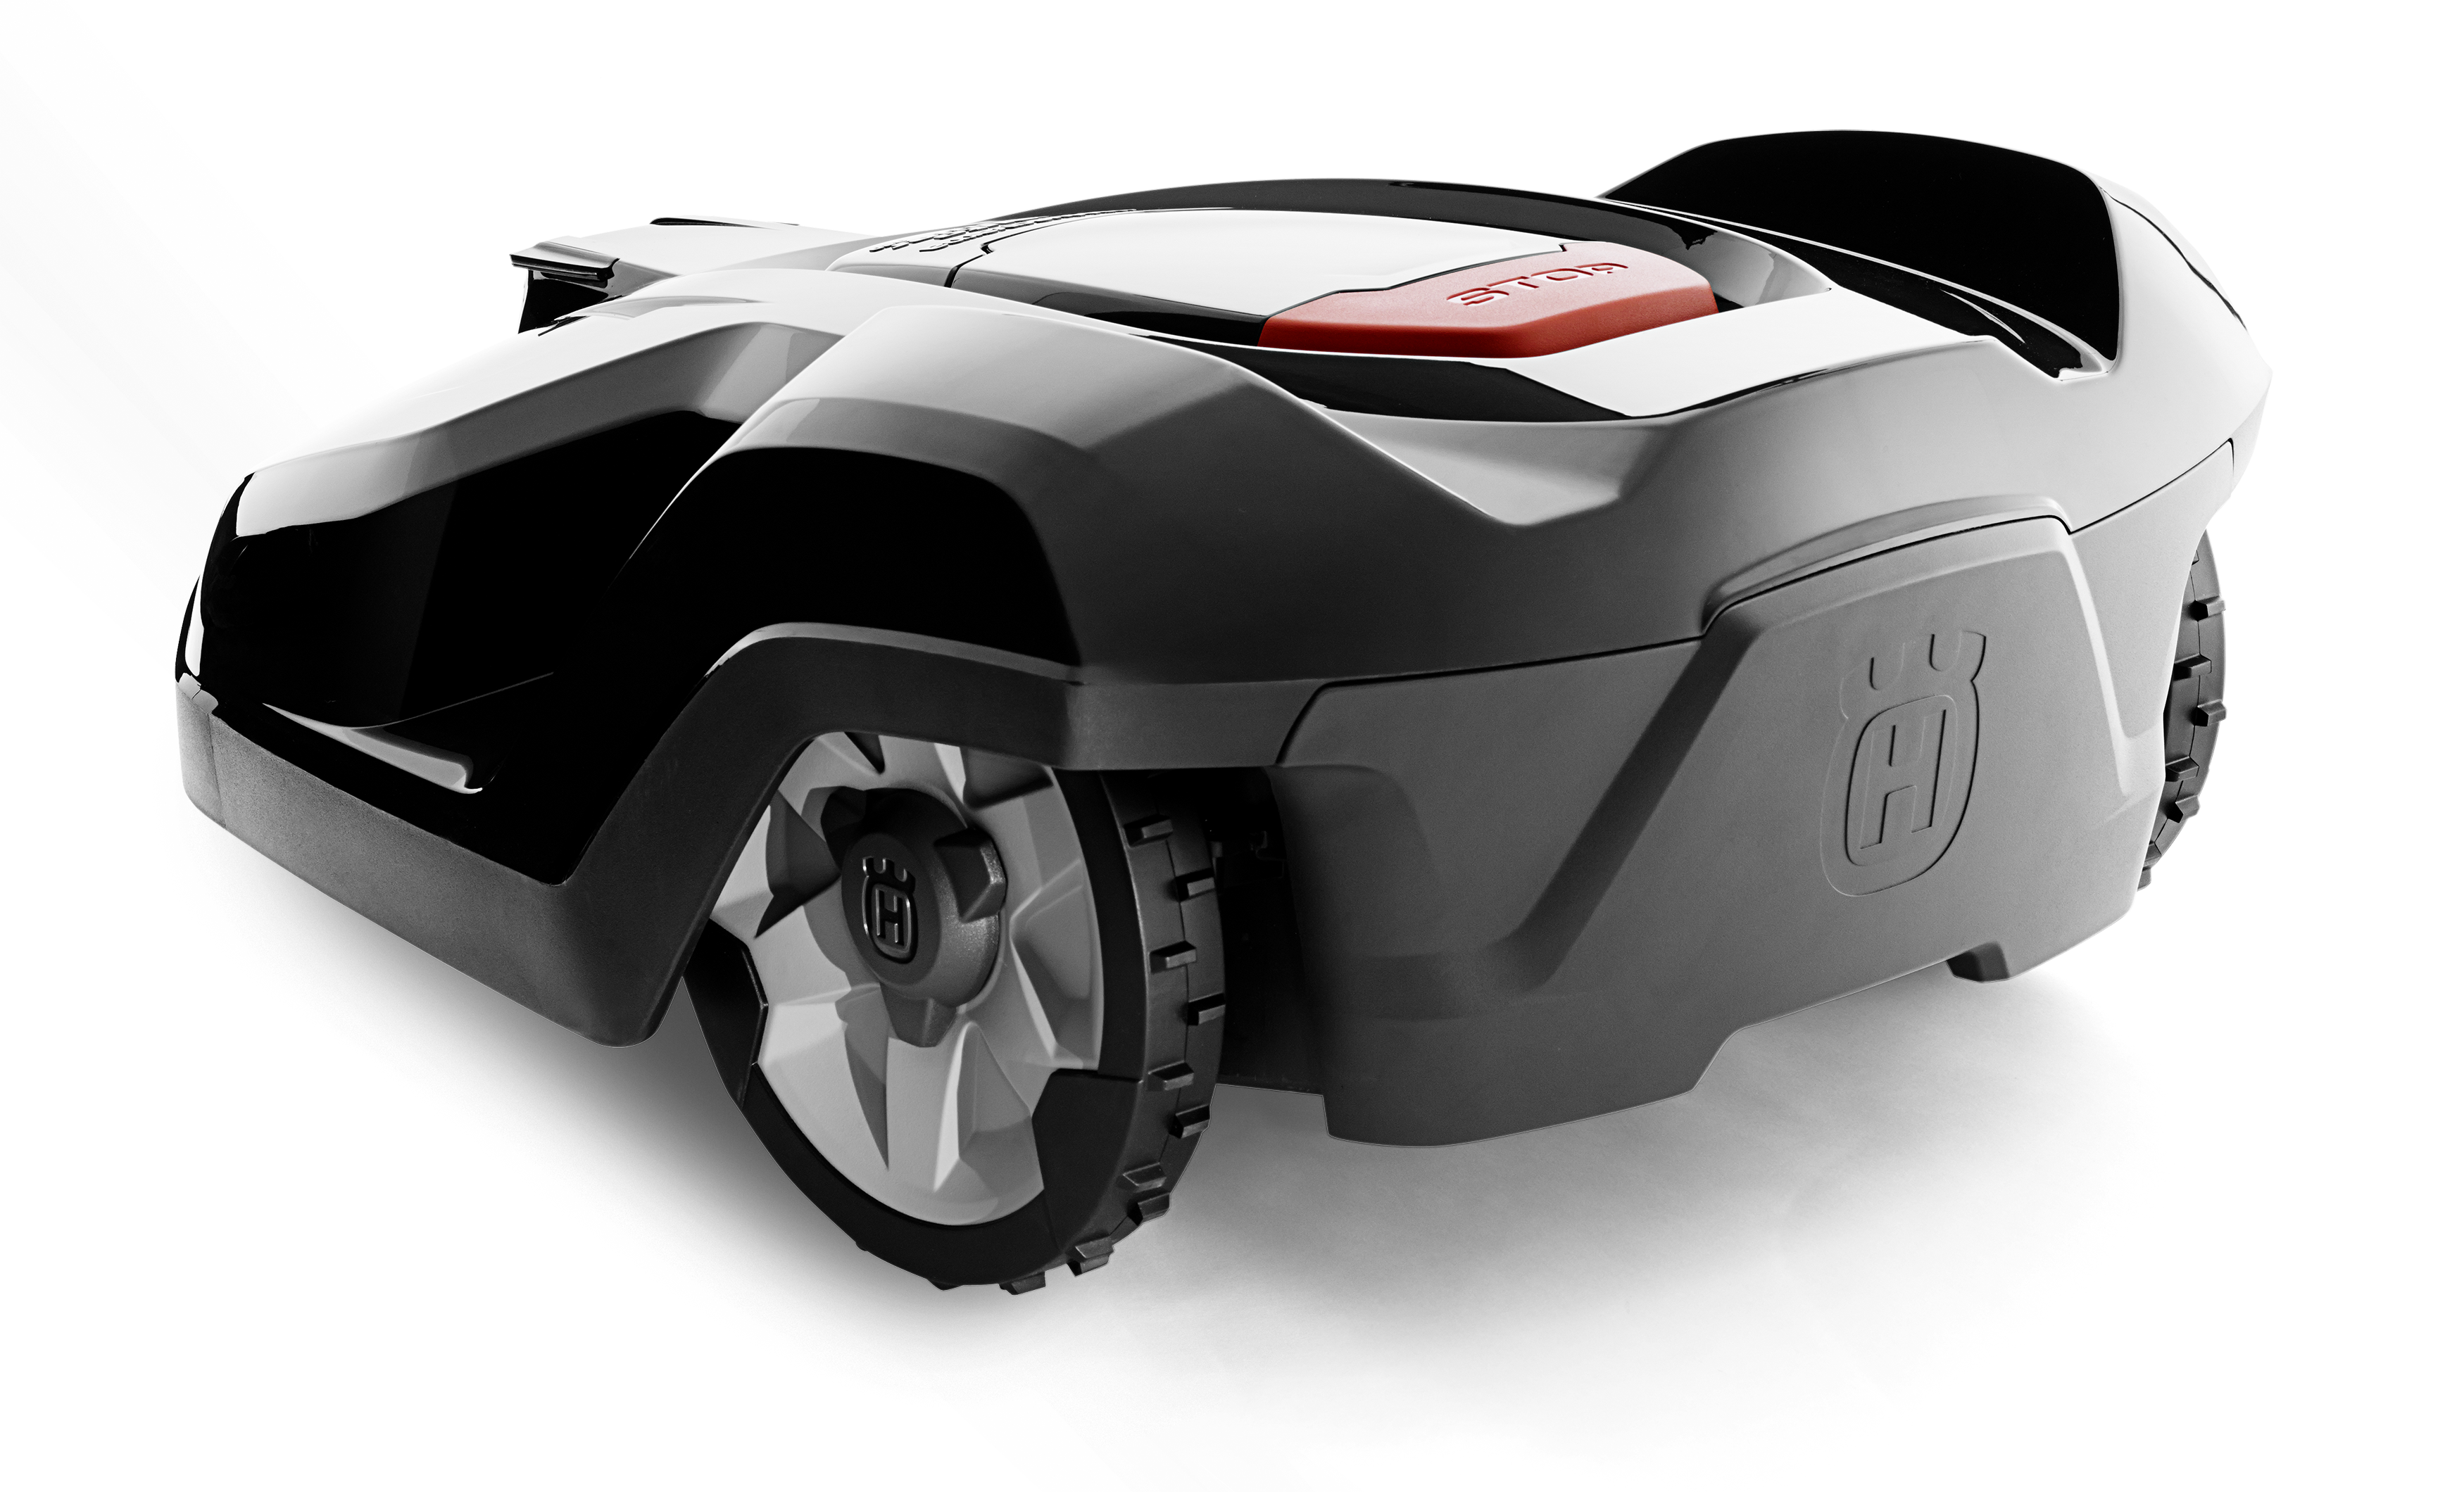 Melns Husqvarna zāles pļāvējs robots – Automower 420 modelis, skats no laizmugures kreisā sāna